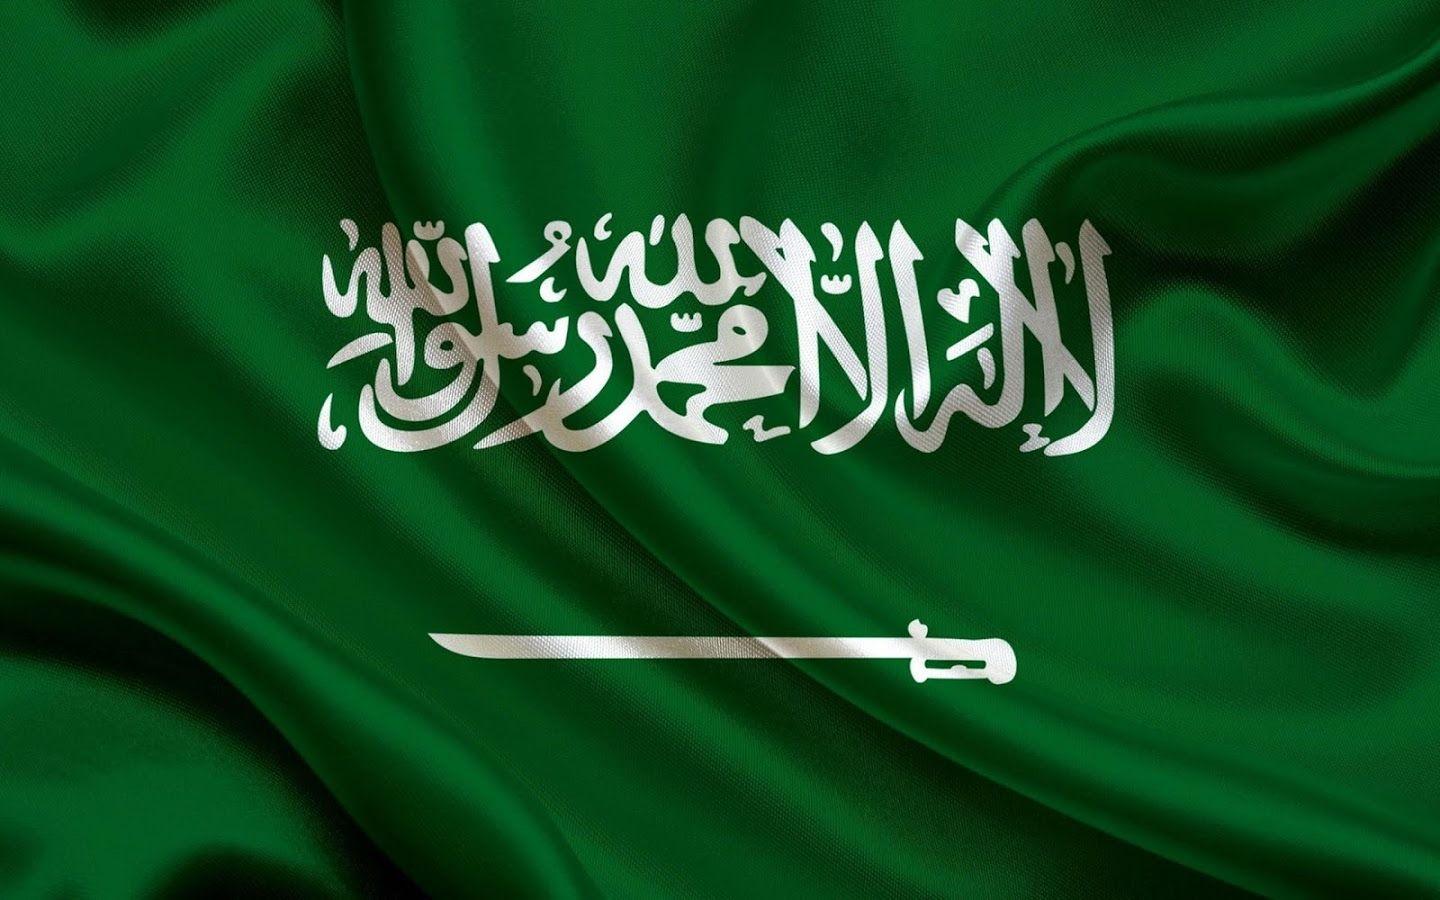 Saudi Arabia Flag Wallpapers